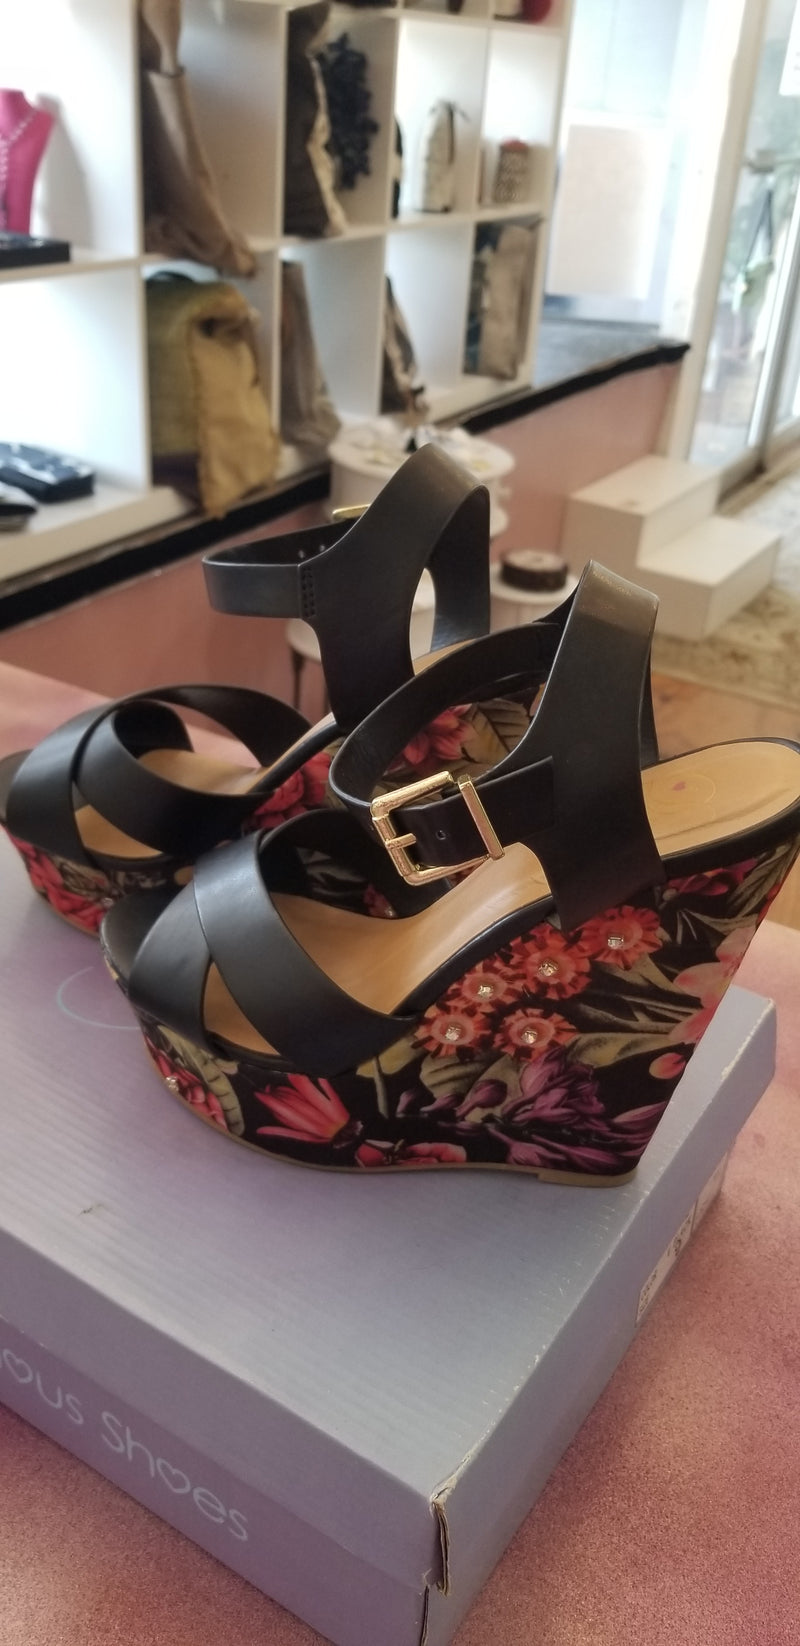 Black floral heels